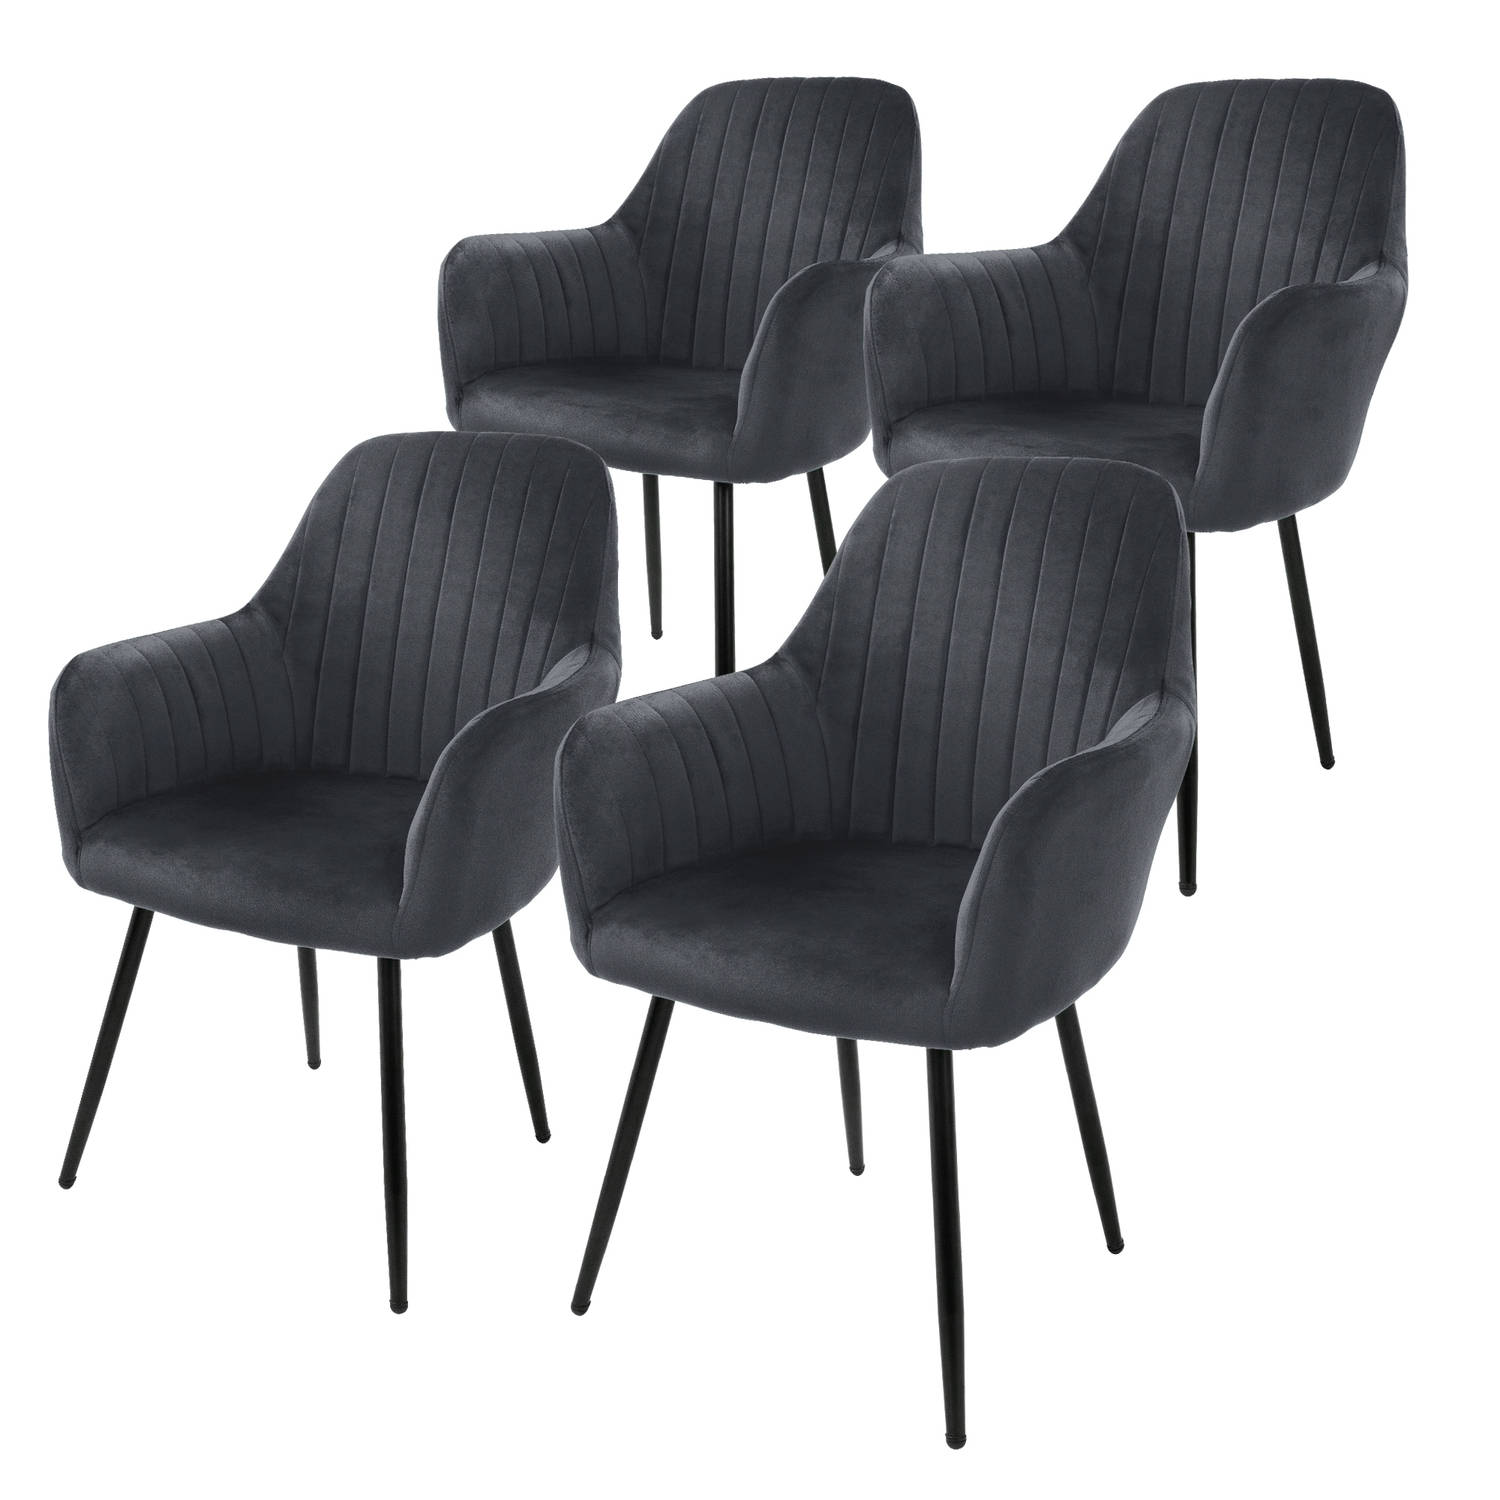 ML-Design set van 4 eetkamerstoelen met rugleuning en armleuningen, grijs, keukenstoelen met fluwelen bekleding, gestoffeerde stoelen met metalen poten, ergonomische stoelen voor e